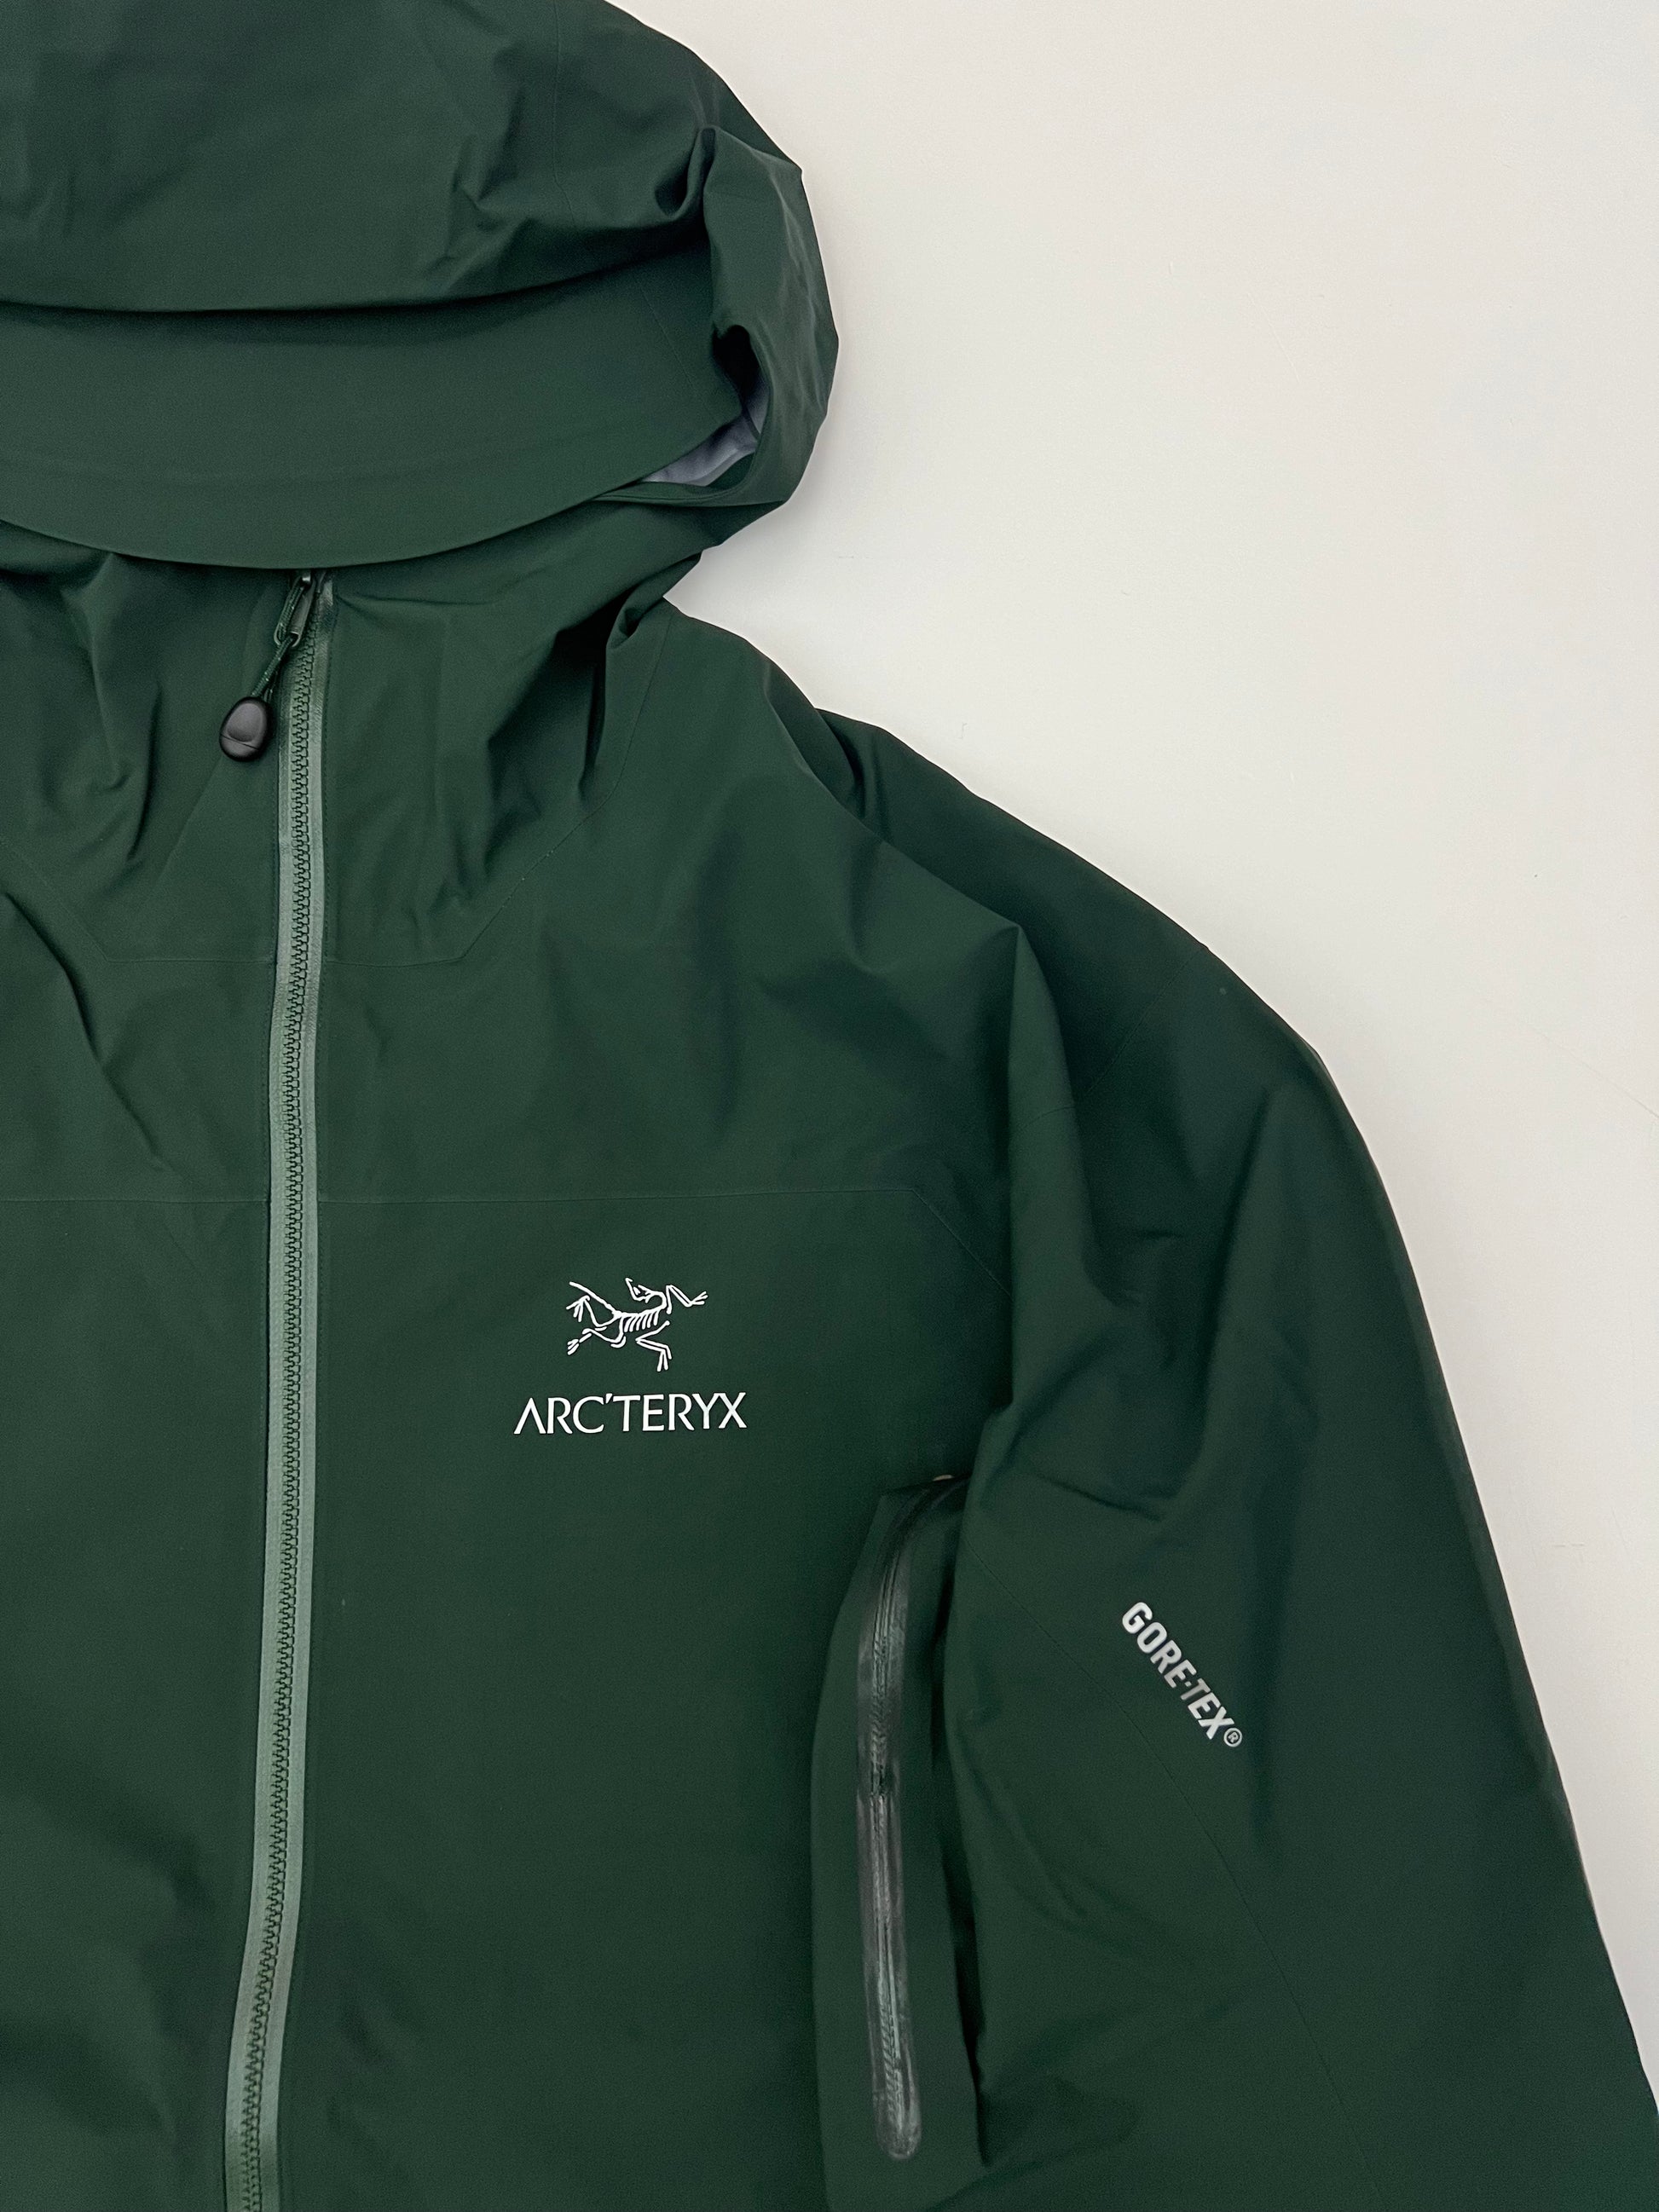 Arc’teryx Zeta AR Jacket Conifer Green Men’s XL Extra Large Gore-Tex